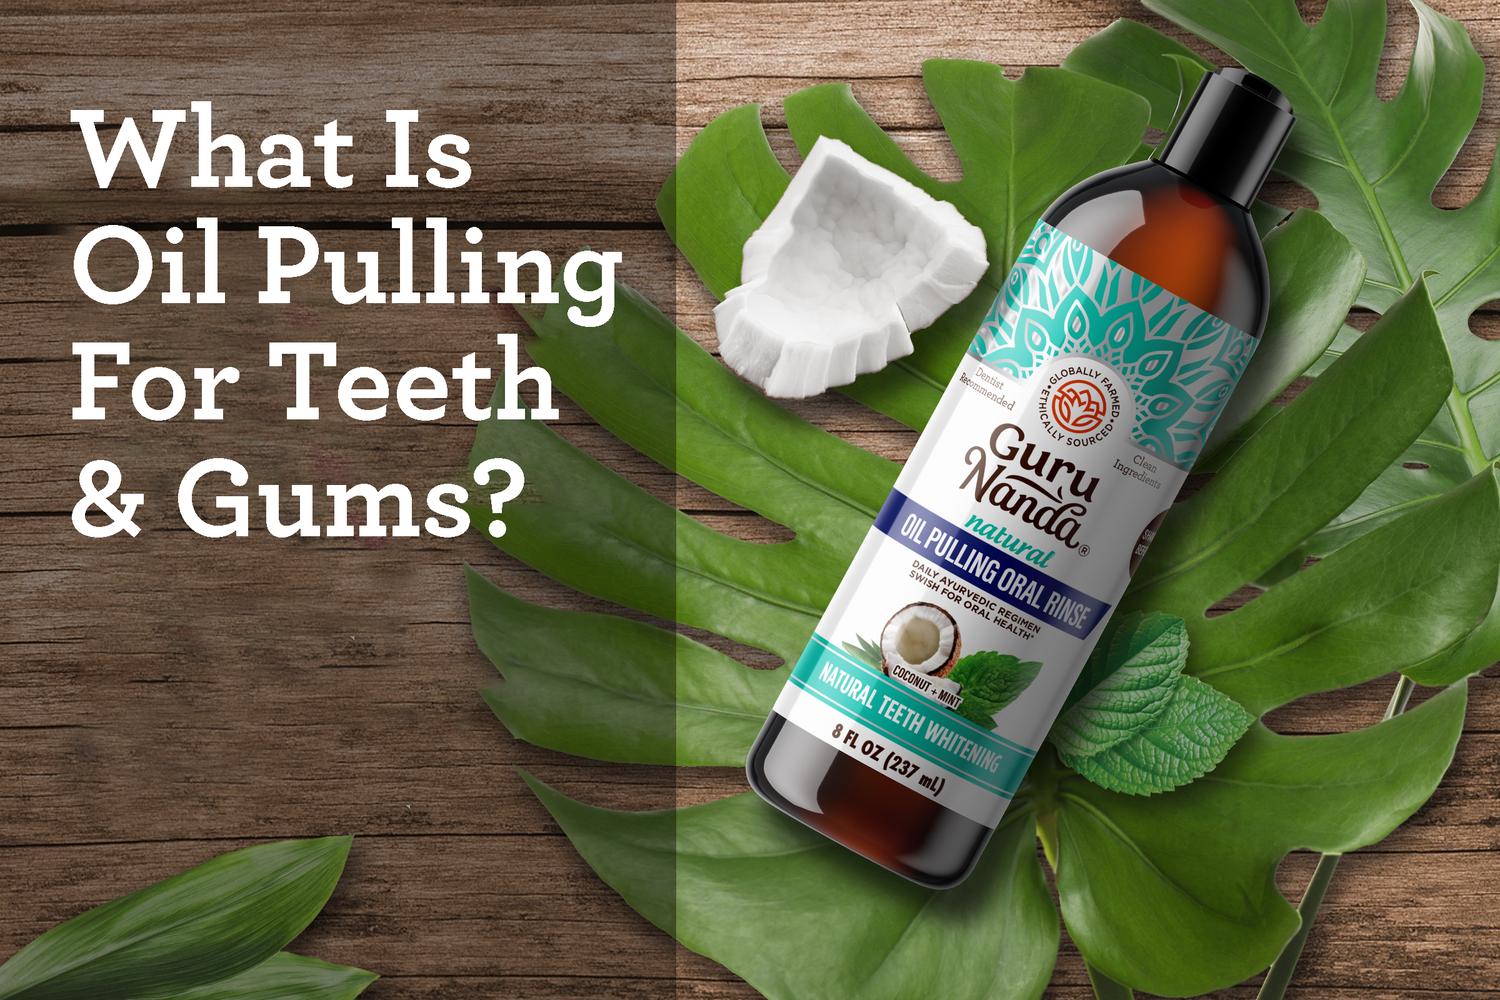 What is Oil Pulling For Teeth & Gums? - GuruNanda